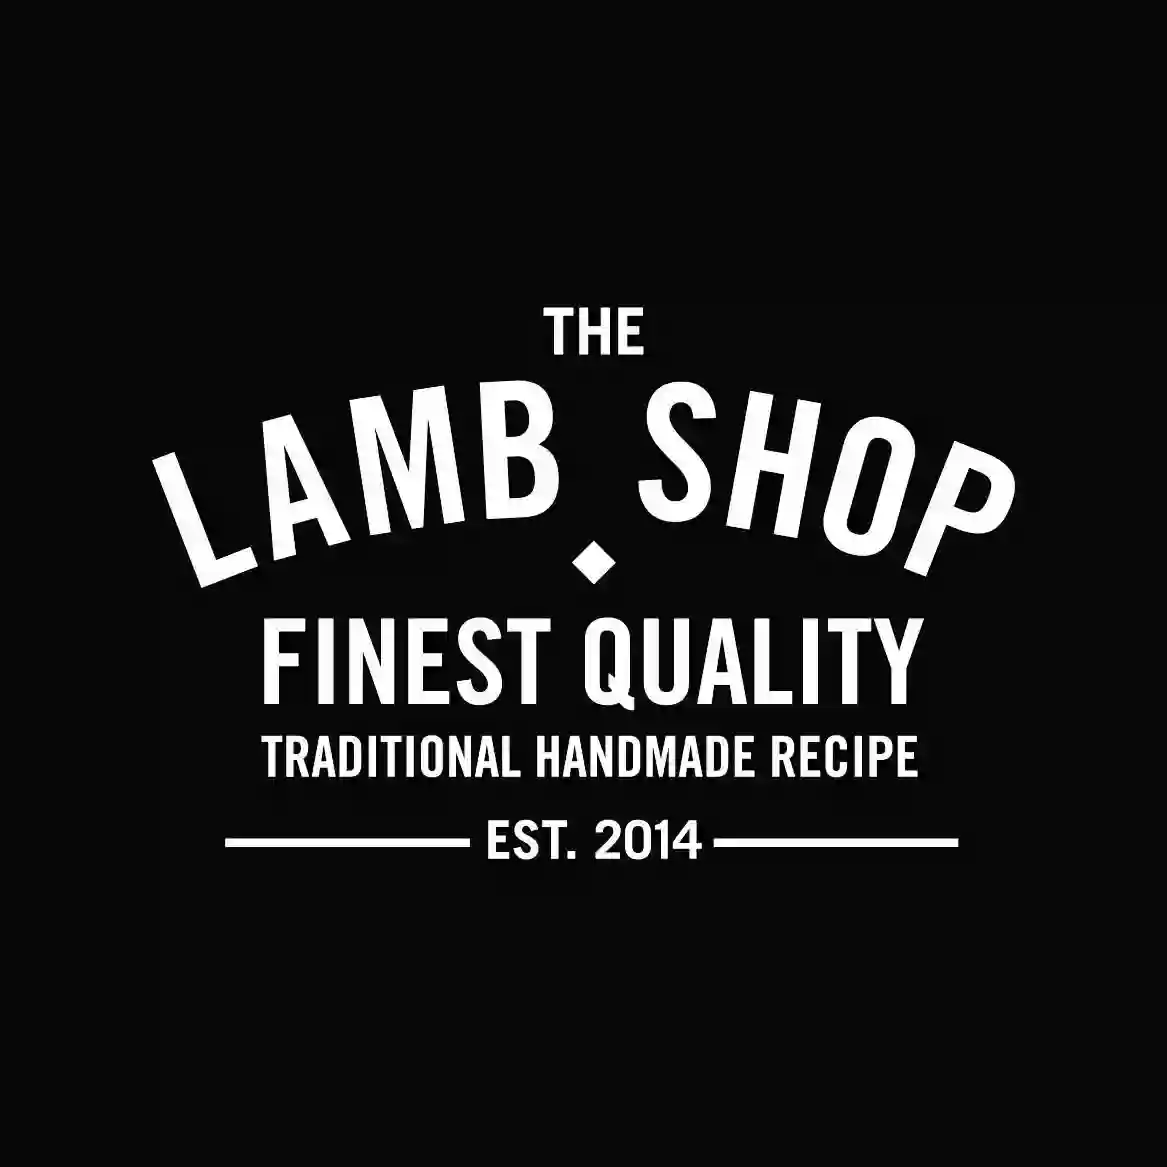 The Lamb Shop